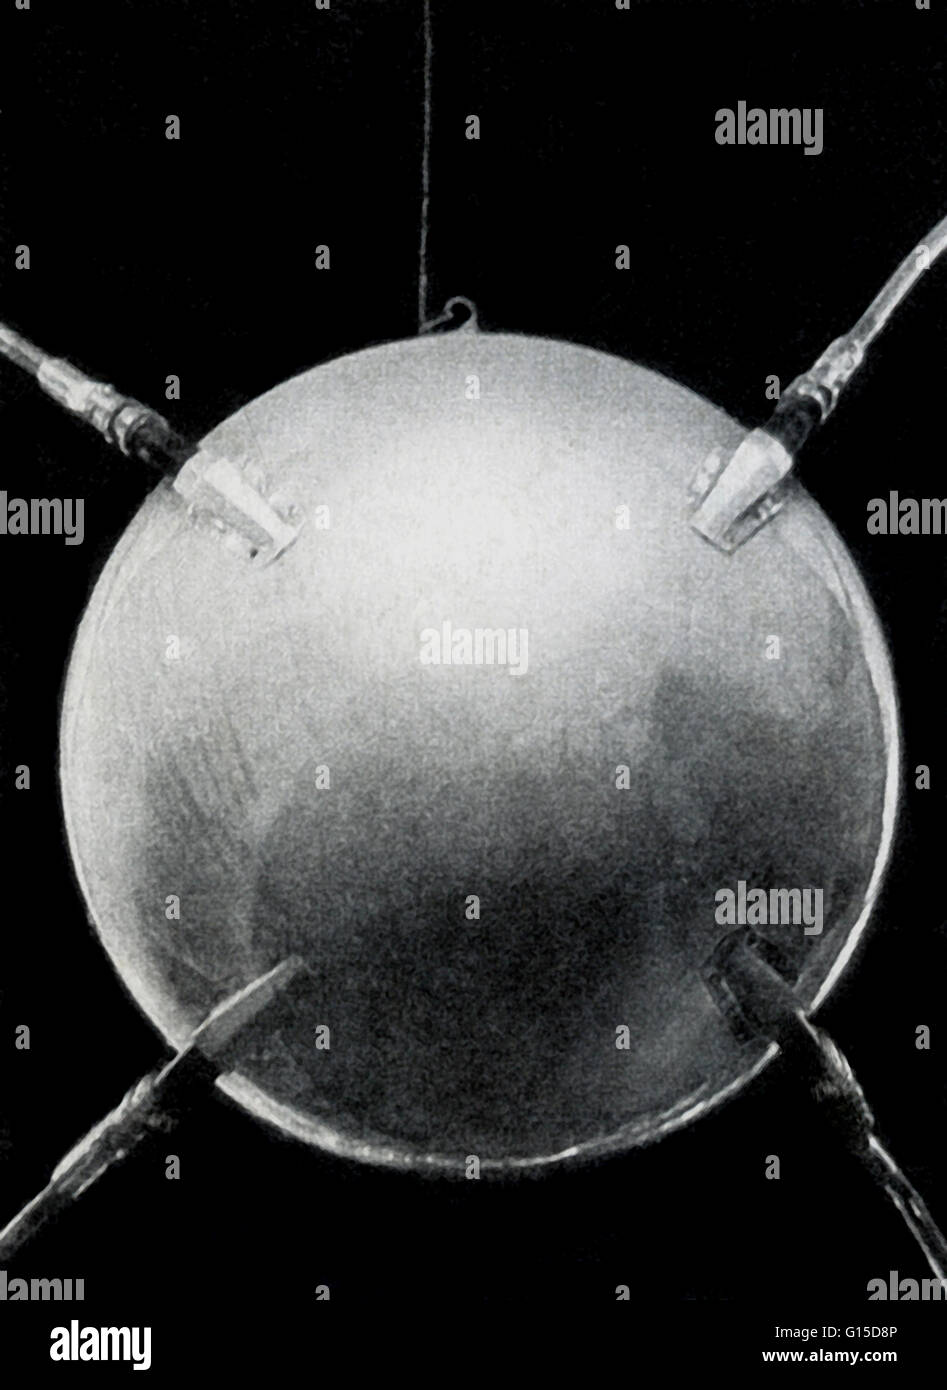 Den ersten künstlichen Satelliten, Sputnik 1, frontal. Sputnik startete am 4. Oktober 1957 von der ehemaligen Sowjetunion. Der Name Sputnik ist Russisch für "Reisebegleiter" oder Satelliten. Der Körper war eine hochglanzpolierte Aluminiumlegierung Kugel gemessen Stockfoto